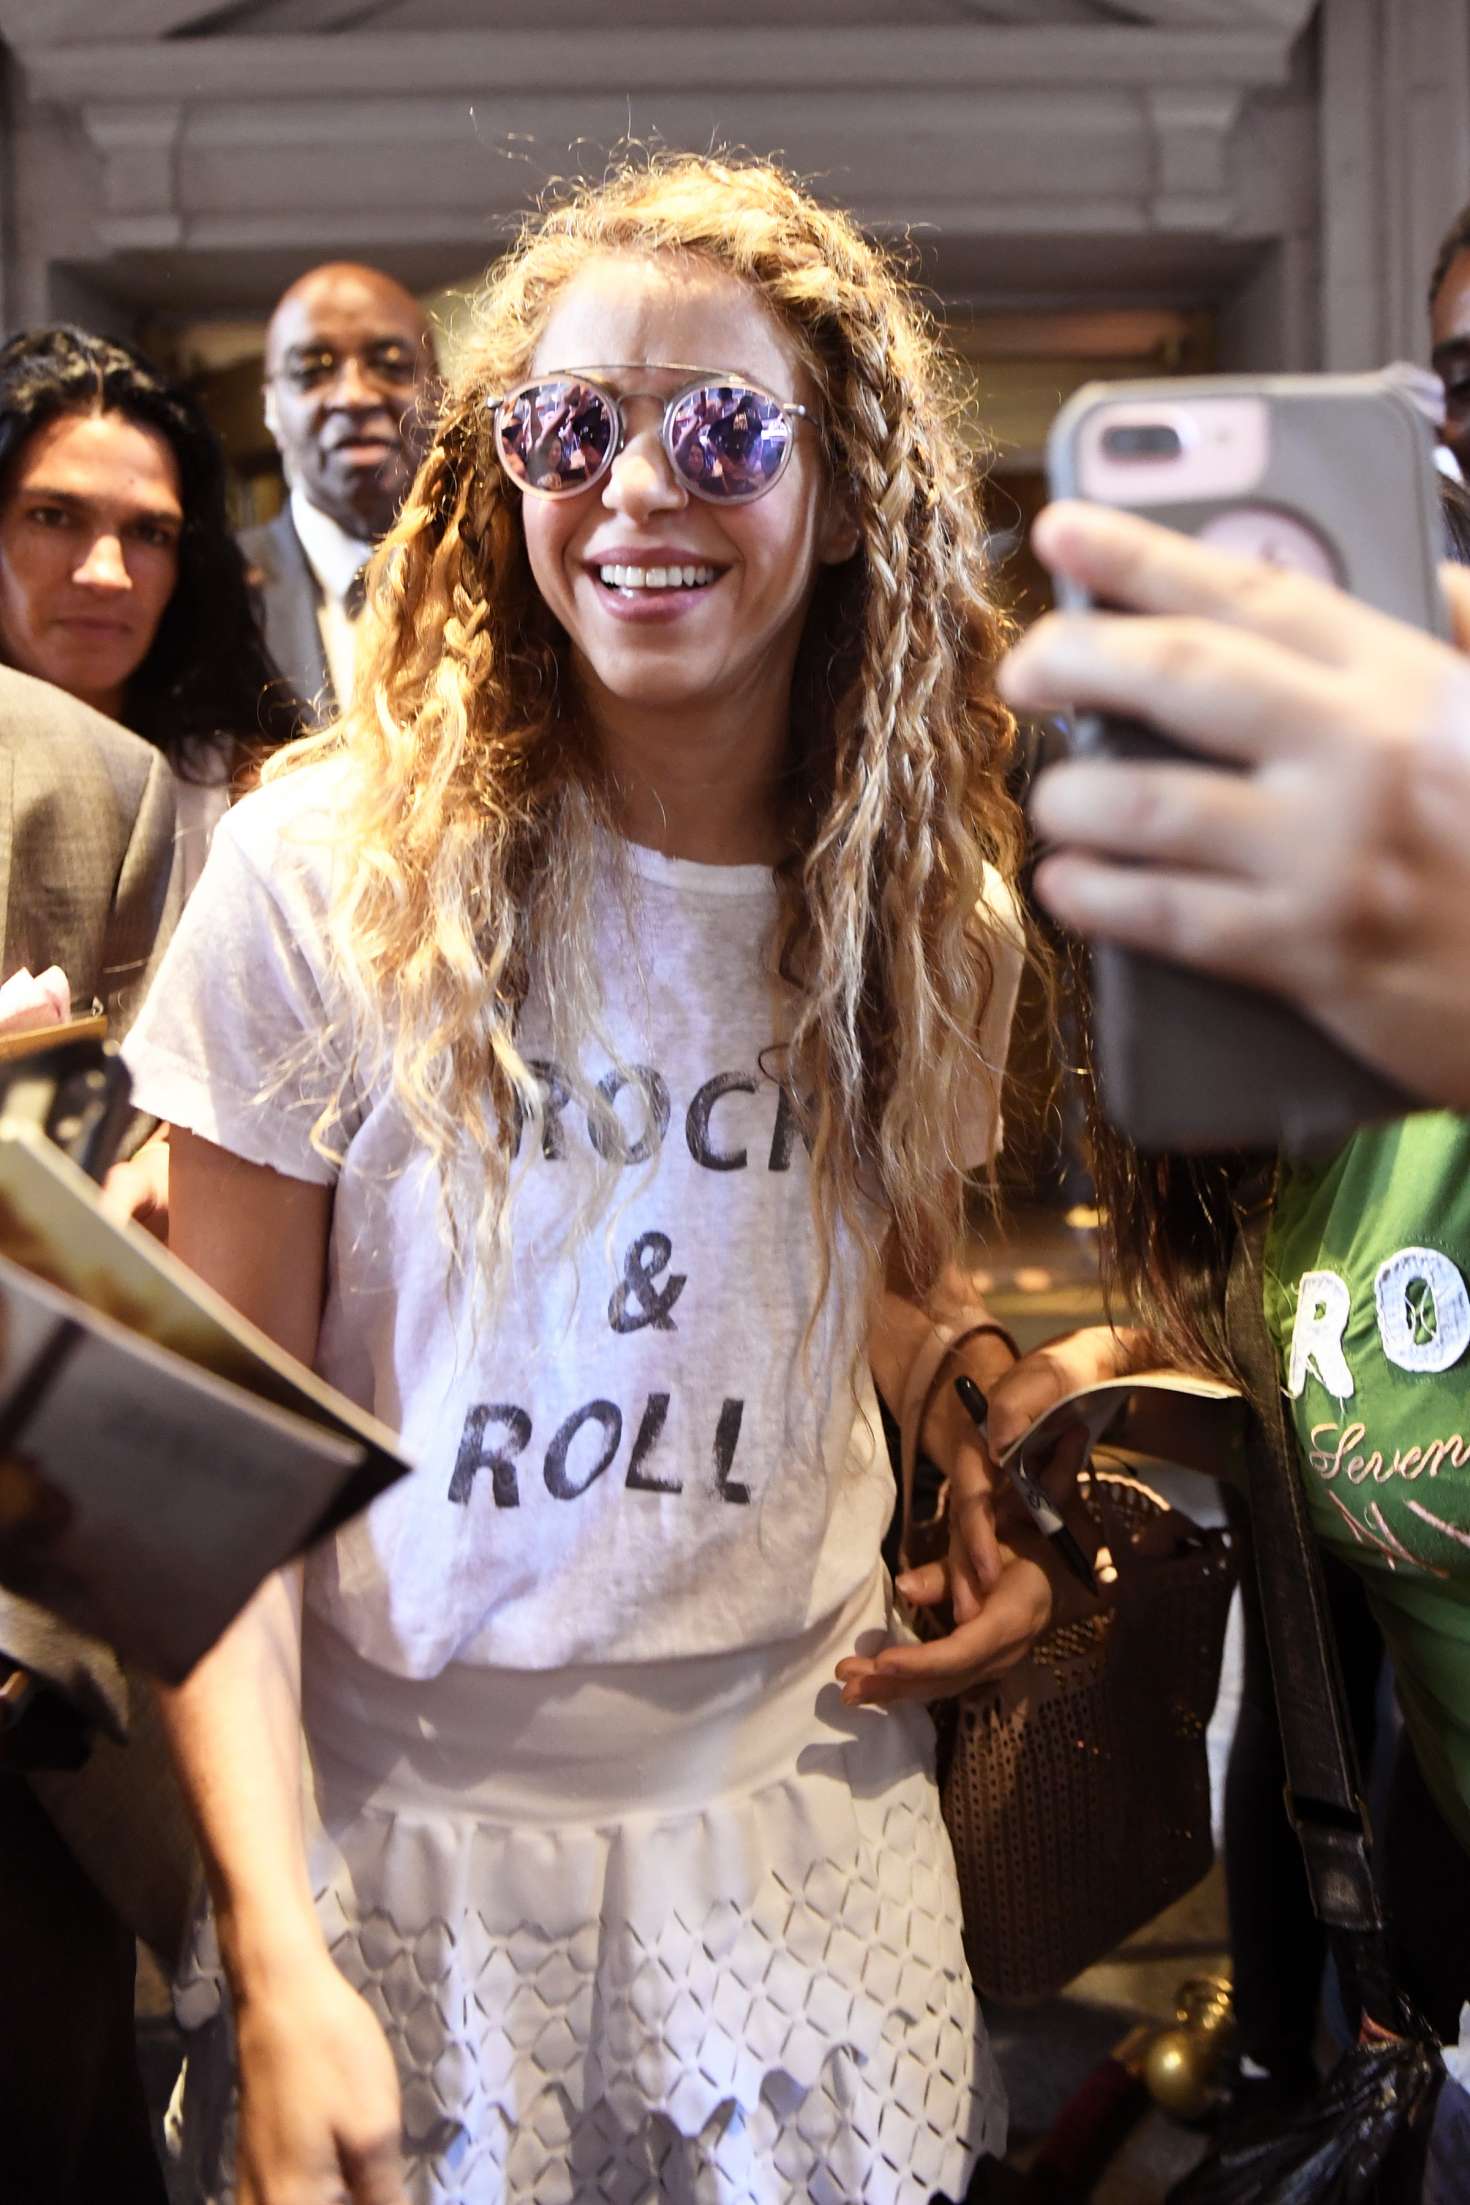 Shakira - Leaving her hotel in New York City